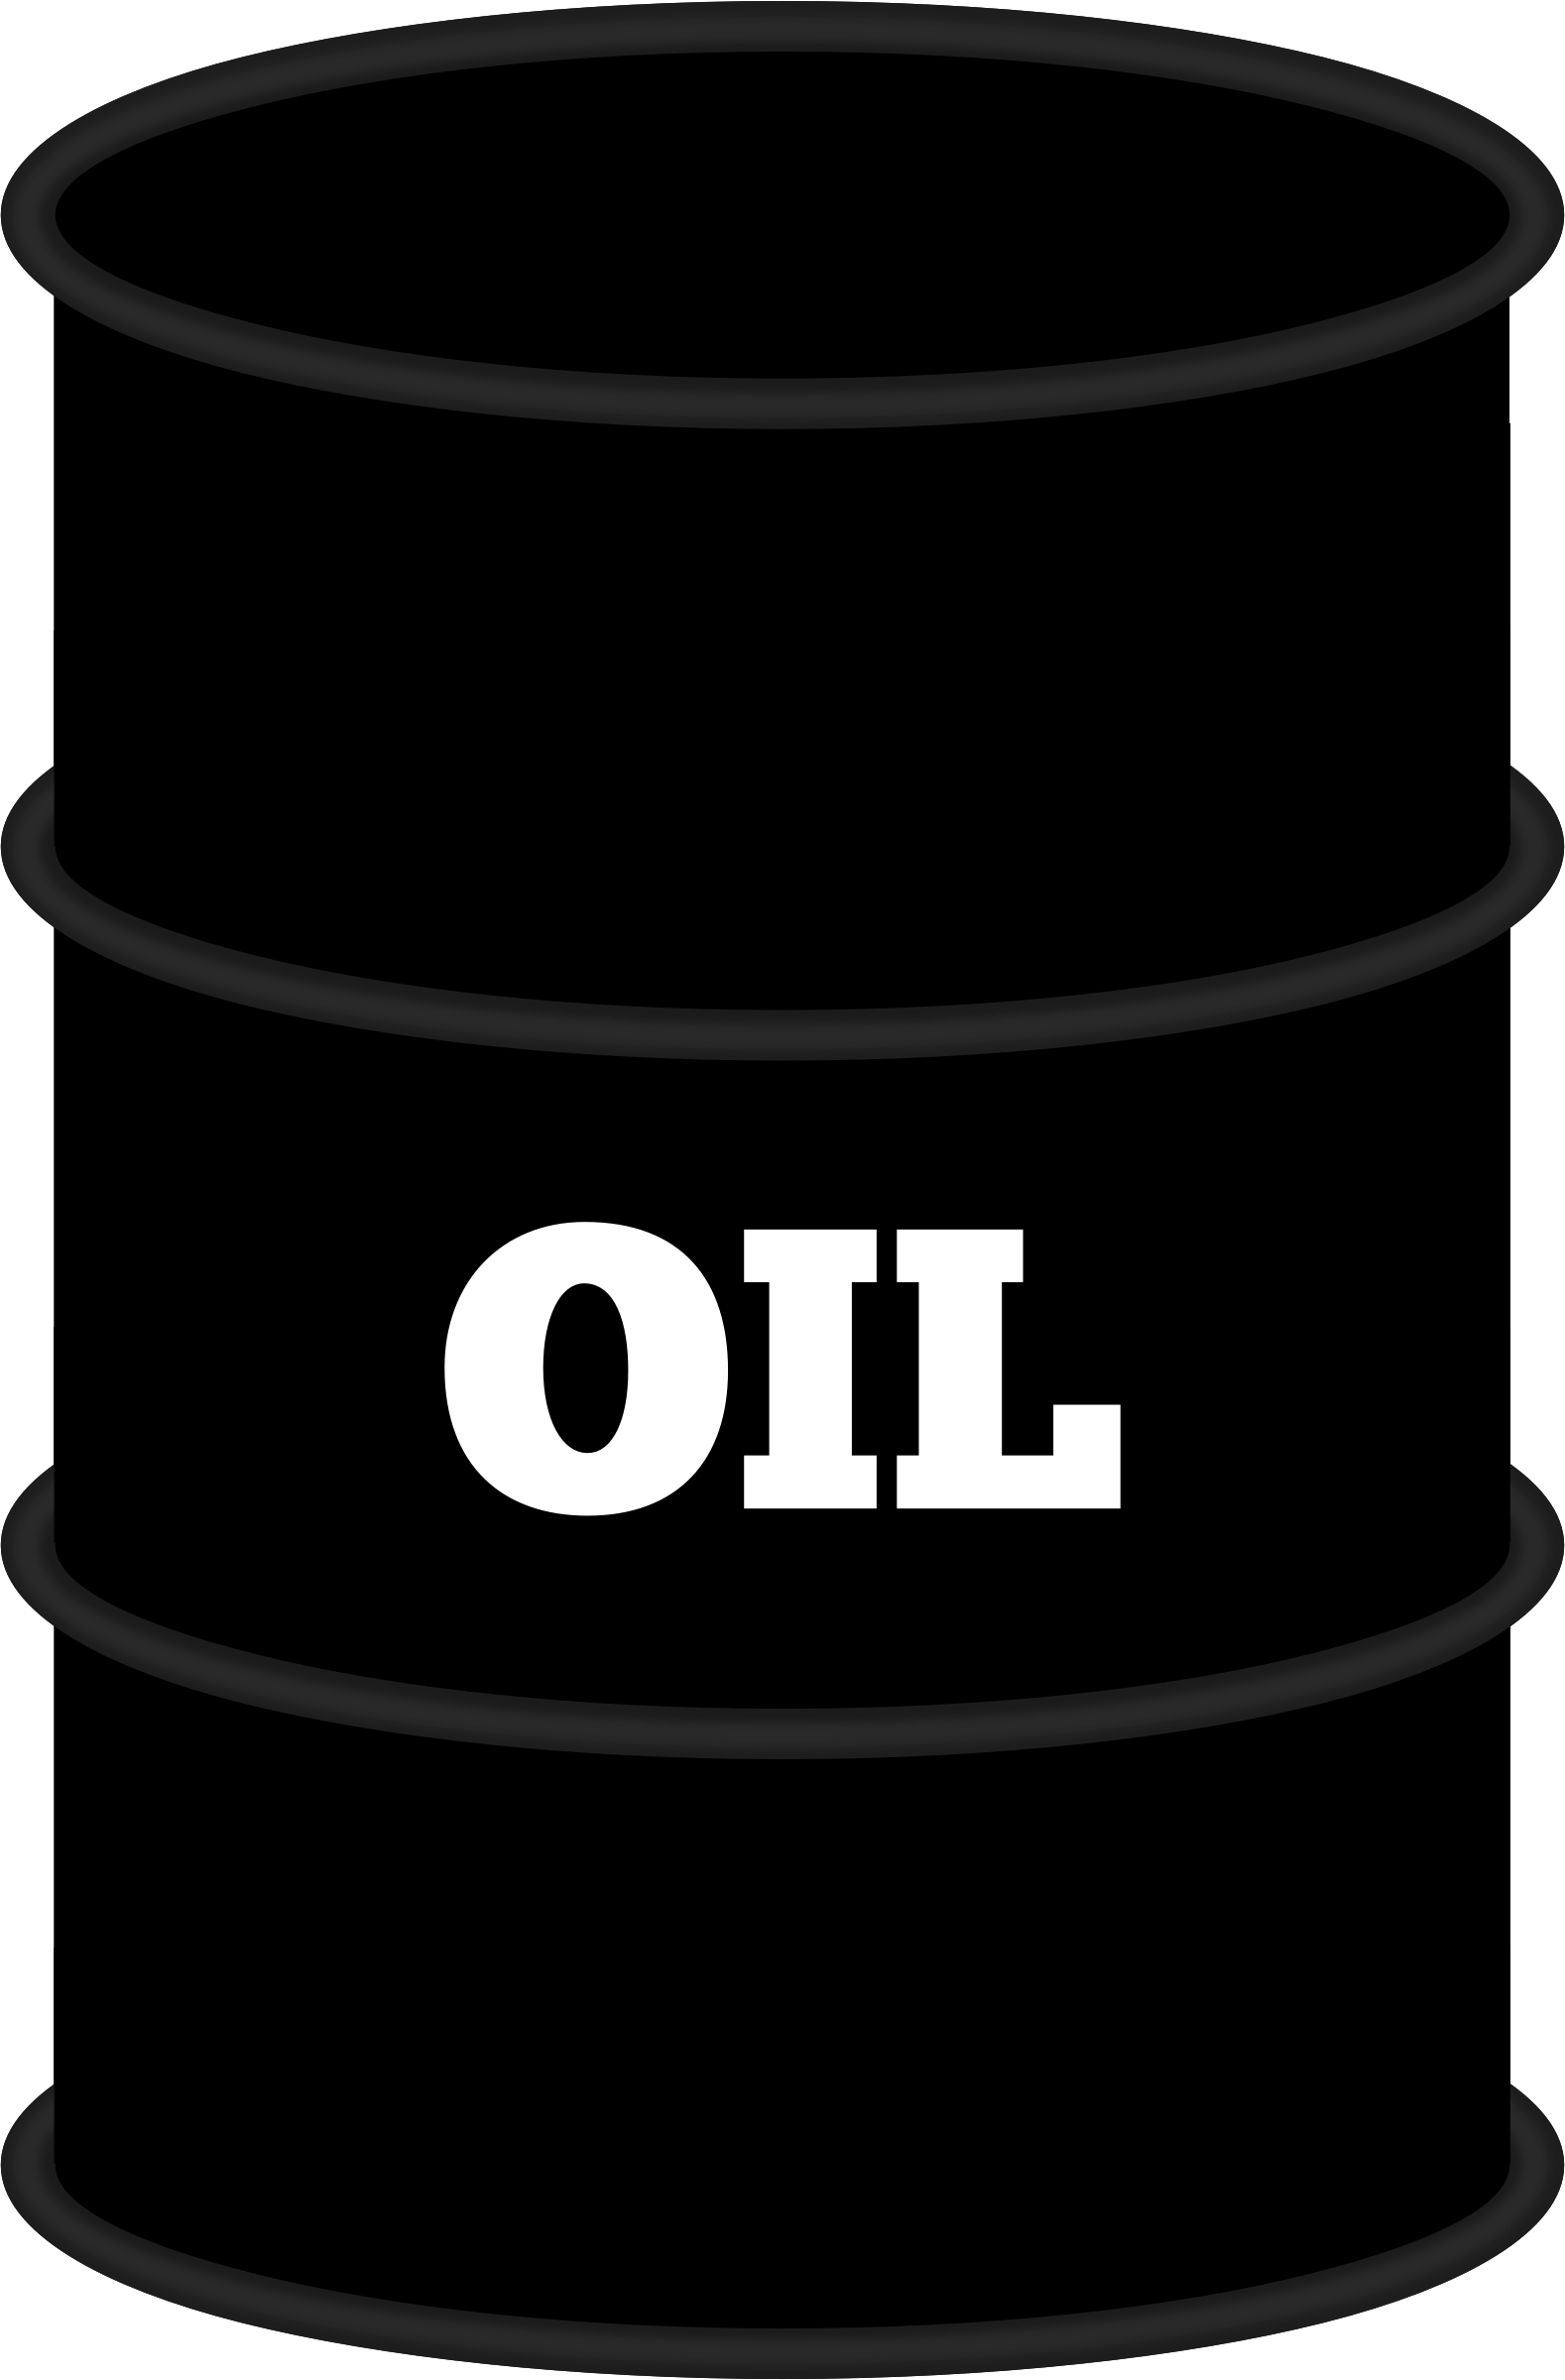 Oil barrel PNG